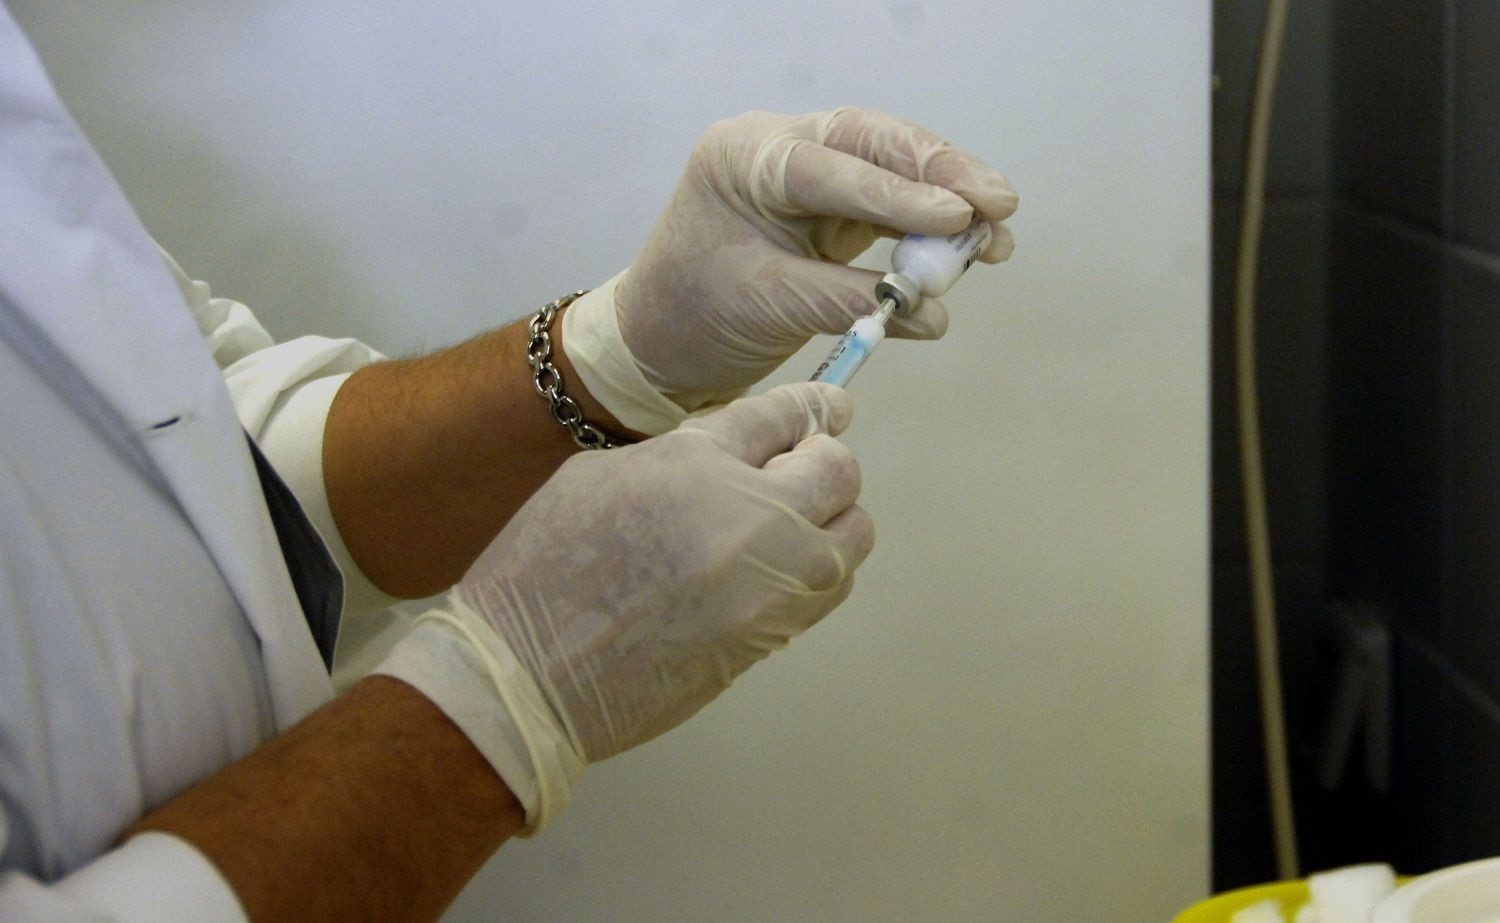 IΣΑ: Ξεκινά εκστρατεία ενημέρωσης για τον αντιγριπικό εμβολιασμό